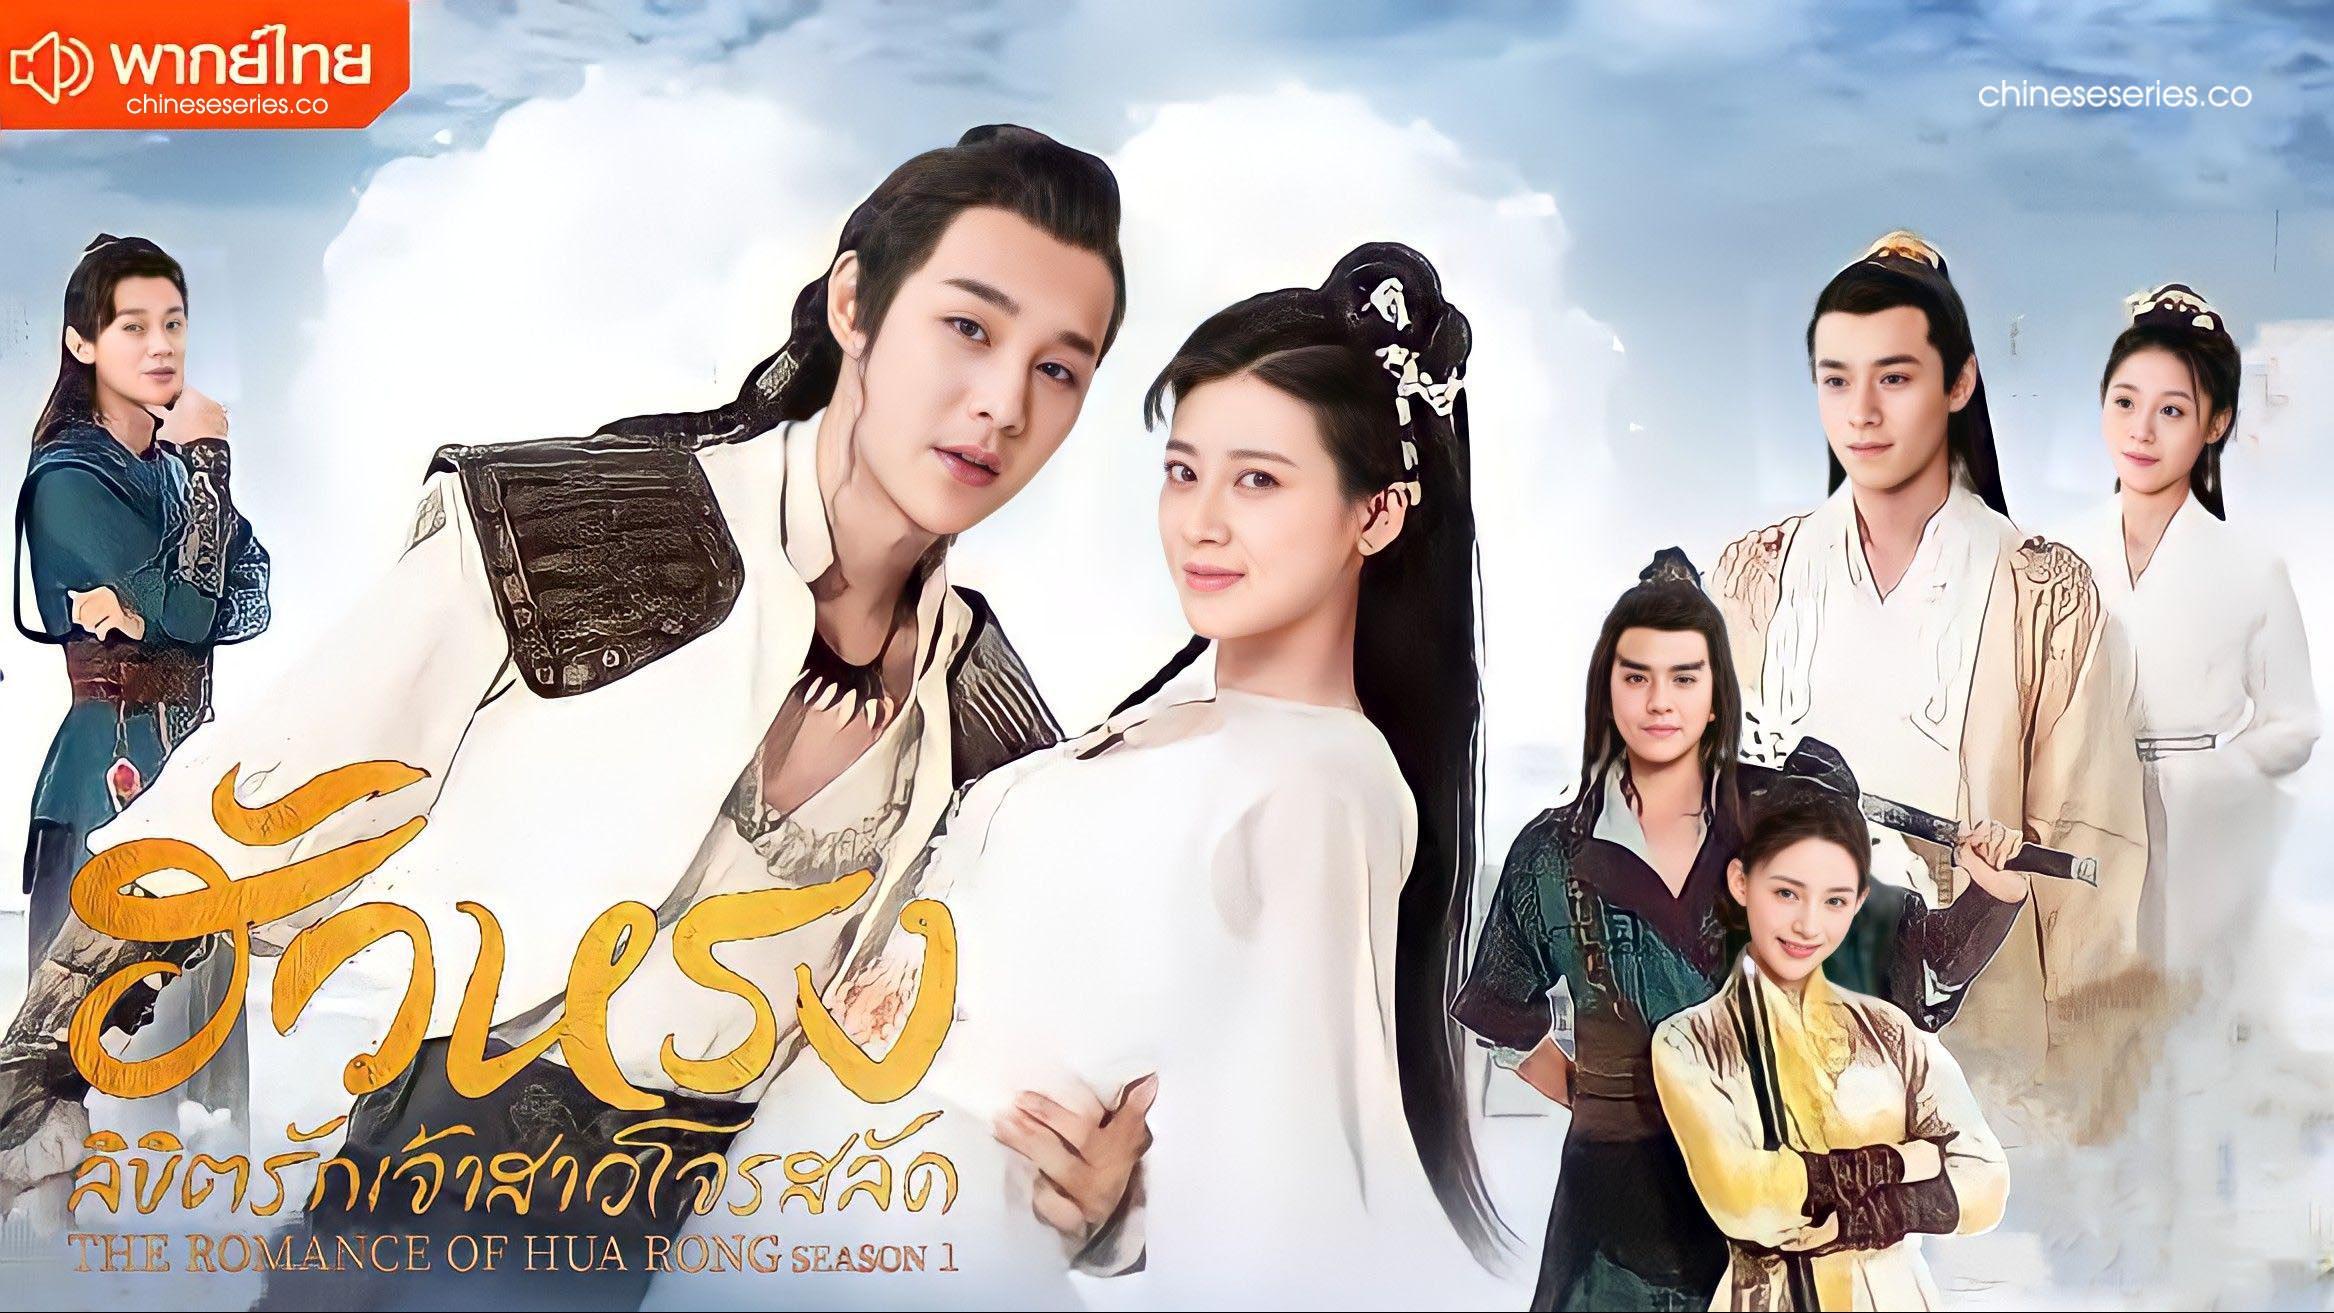 ดูซีรี่ย์จีน The Romance of Hua Rong Season 1 (2019) ฮัวหรง ลิขิตรักเจ้าสาวโจรสลัด ภาค 1 พากย์ไทย